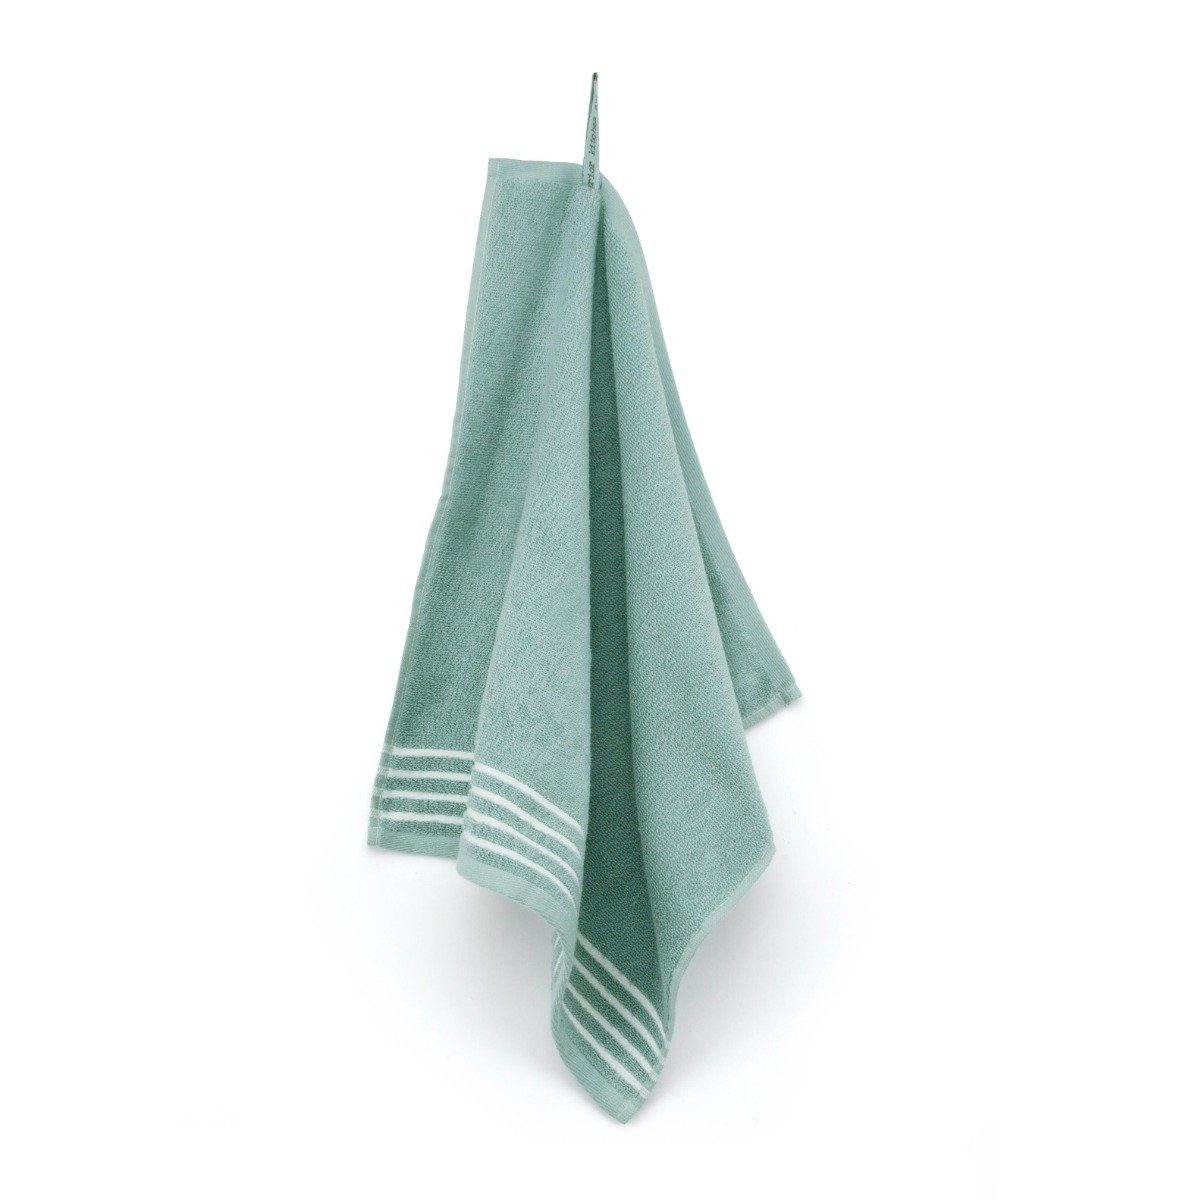 Walra Geschirrtuch Küchentuch Superior Kitchencloth Jade - 50x50 cm, aus 100% Baumwolle, Premium-Qualität - Vielfältig einsetzbares